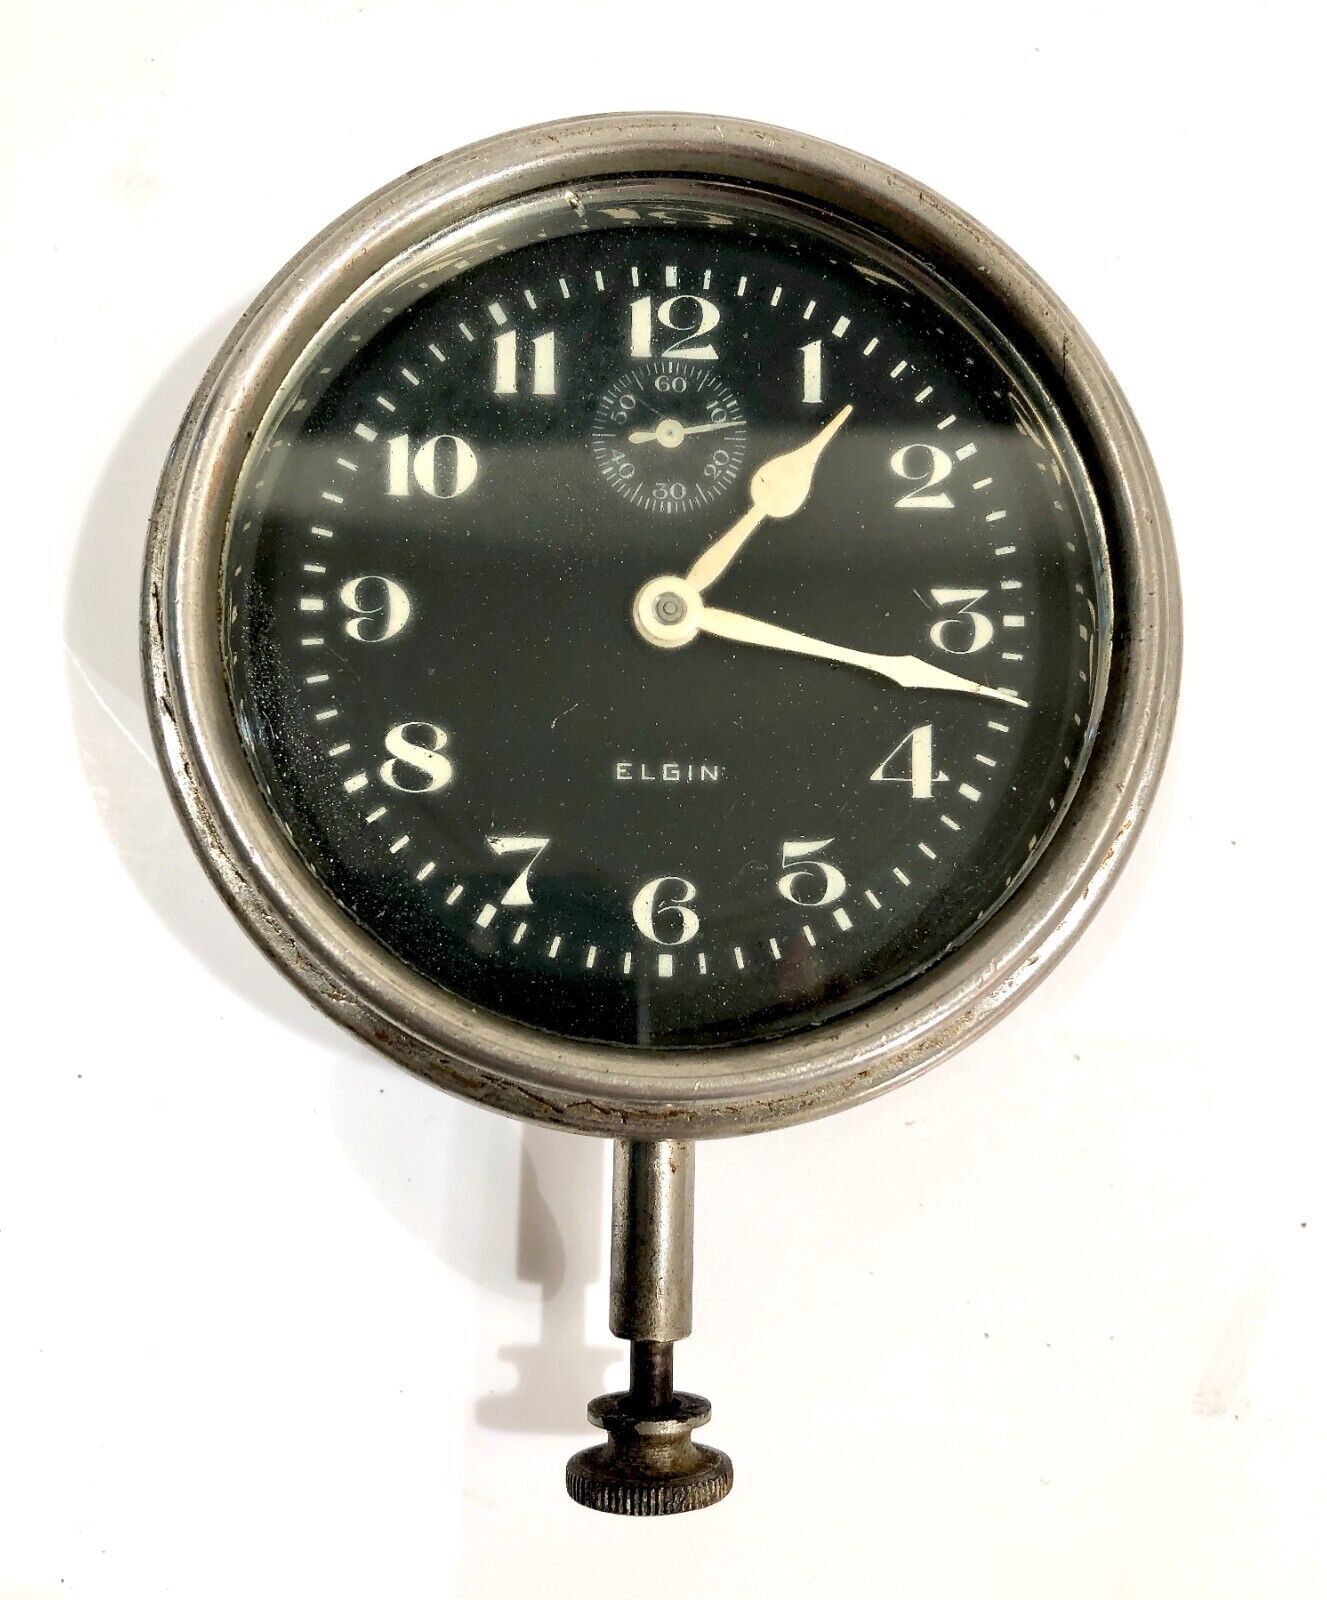 Vintage 1920’s Elgin 8 Day Stem Wind Car Automobile Clock S/N 29140196 LOOK READ